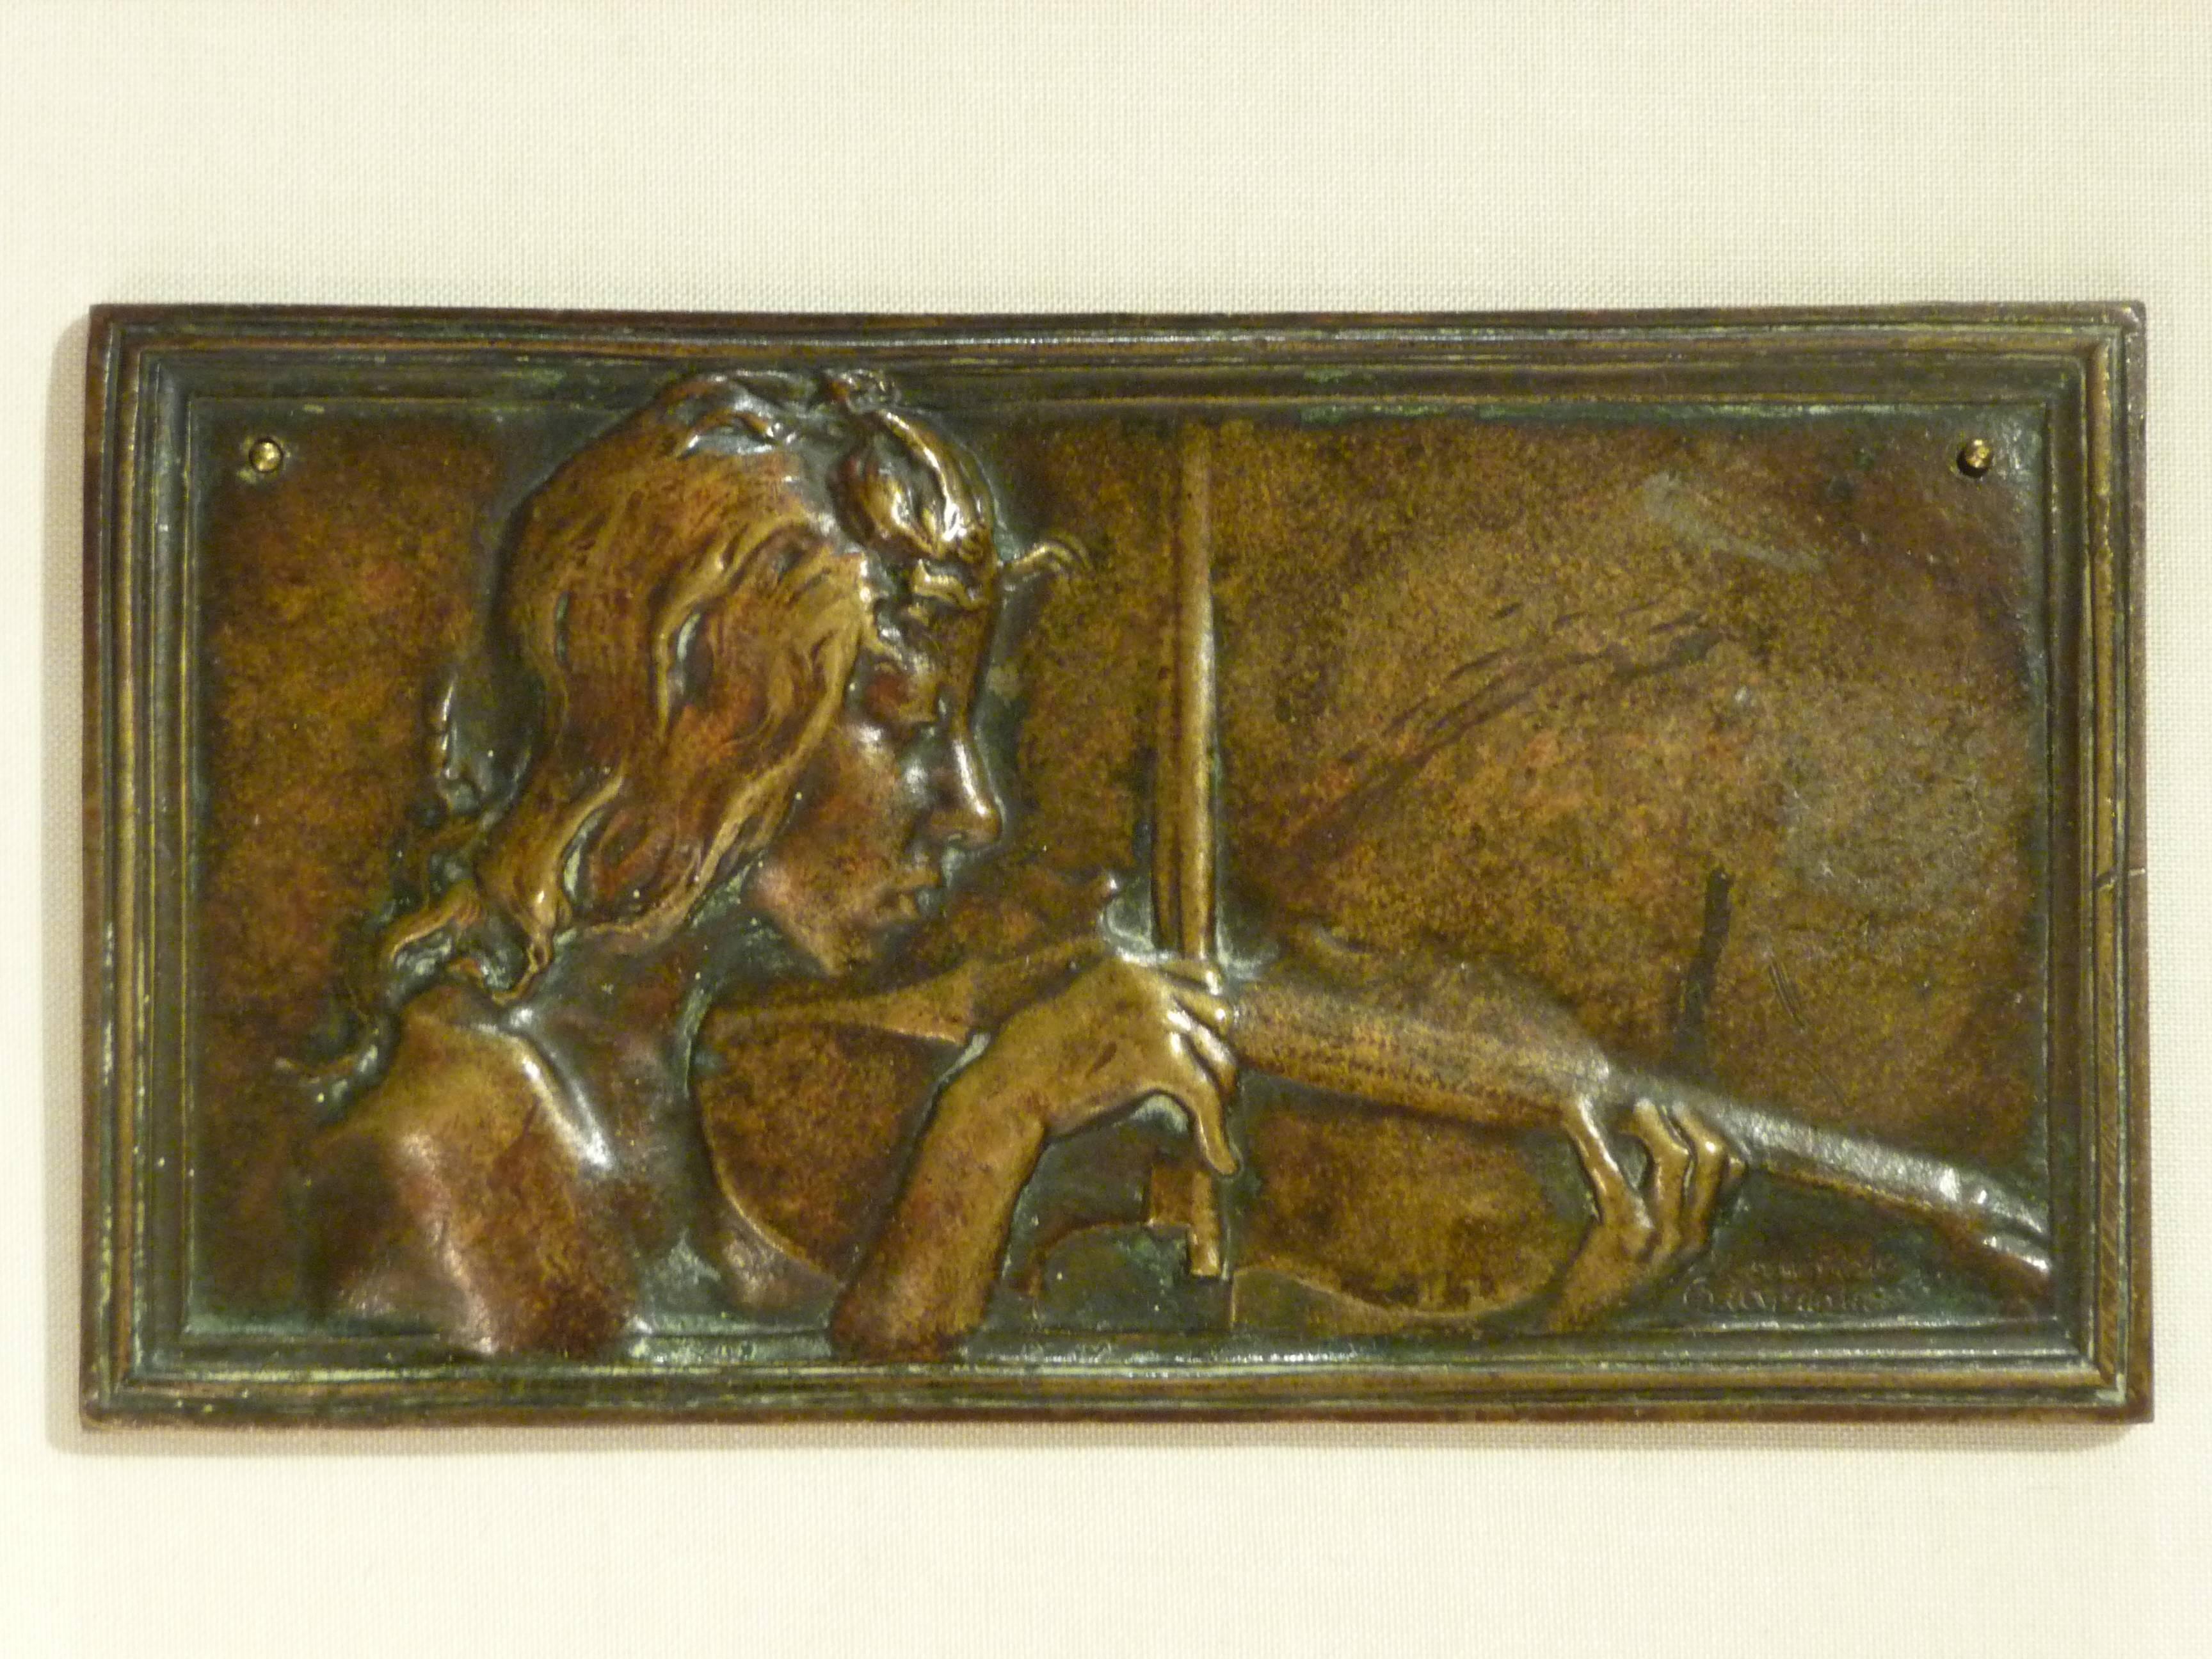 Alexandre Charpentier
"Le Chant," "La Musique"
Two bronze plaques.
Literature: Alexandre Charpentier, Naturalisme et Art Nouveau, musée d'Orsay, 2008, p. 62 and p.145
Signed.